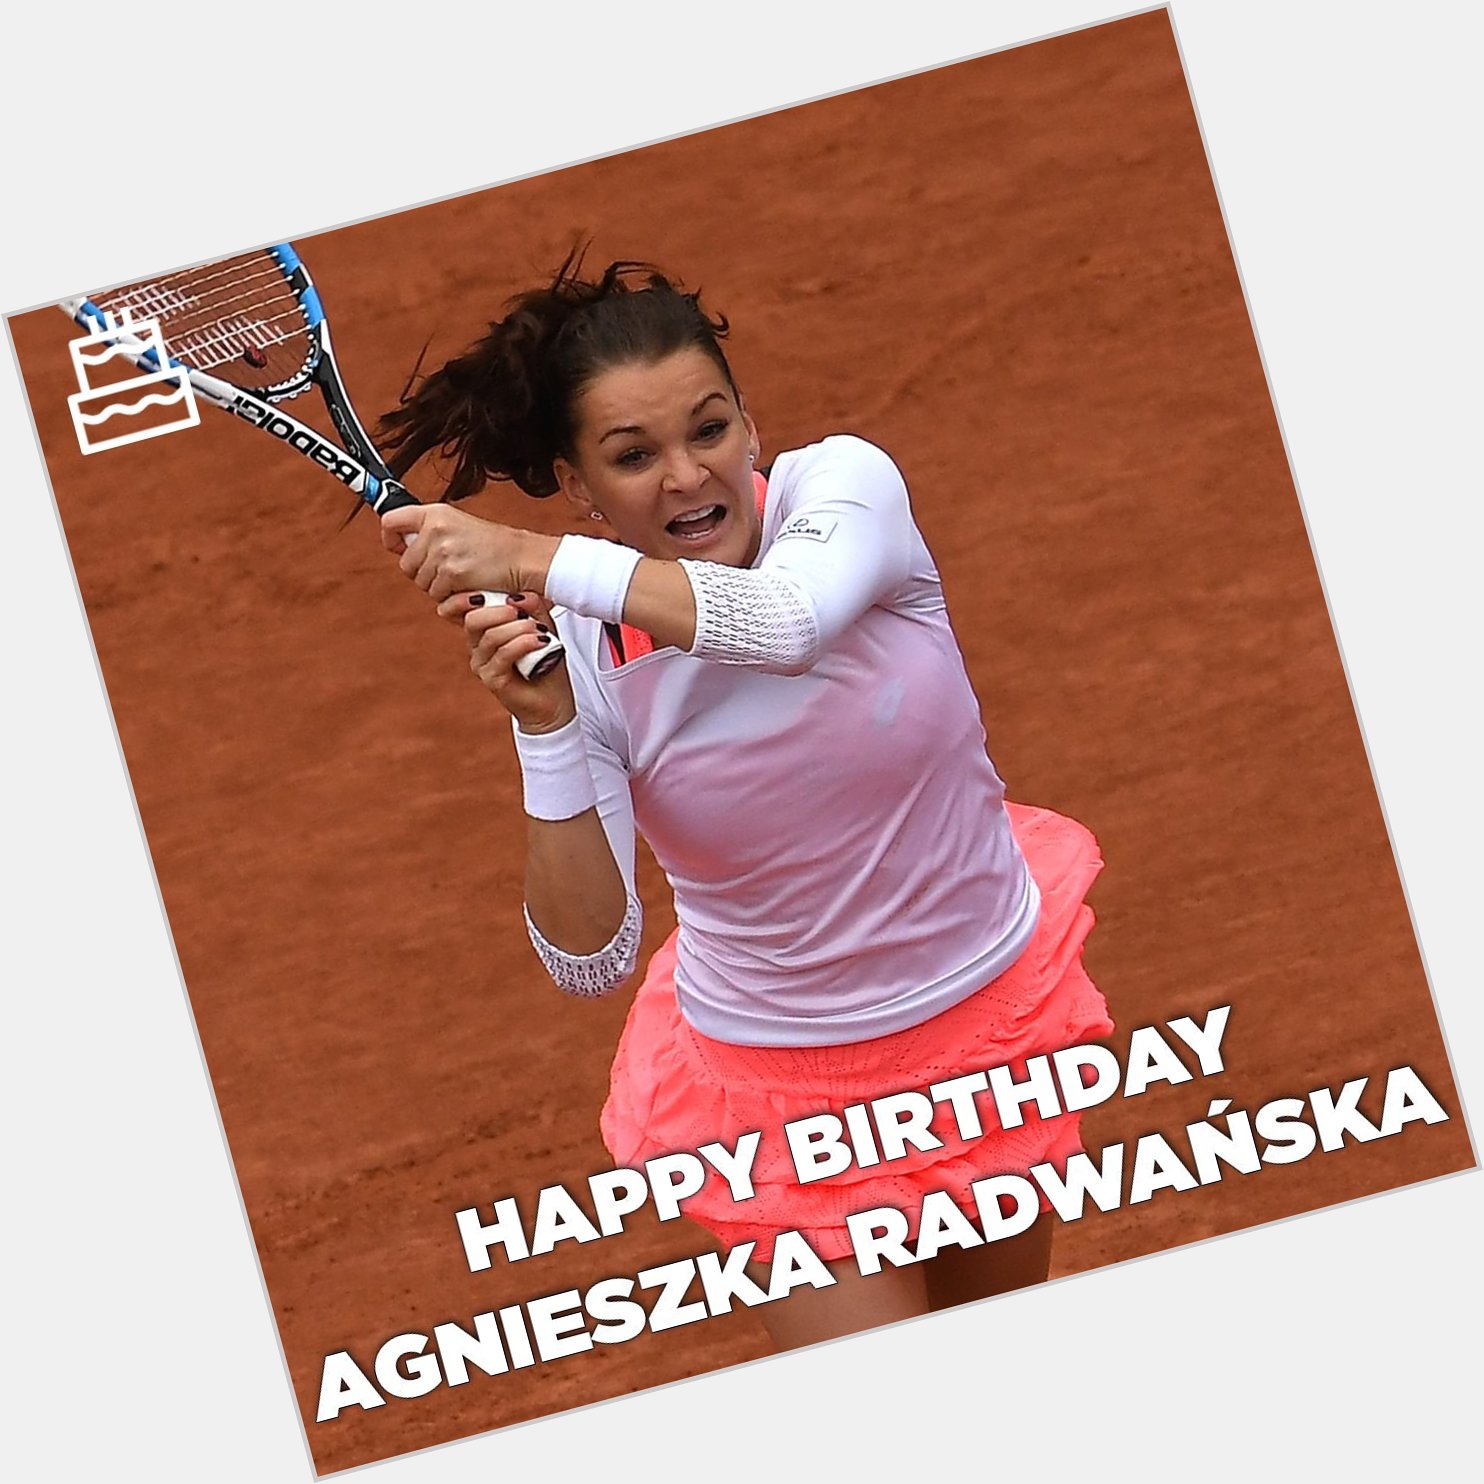 Un bon anniversaire à Agnieszka Radwa ska -----
Happy birthday Agnieszka Radwa ska !  